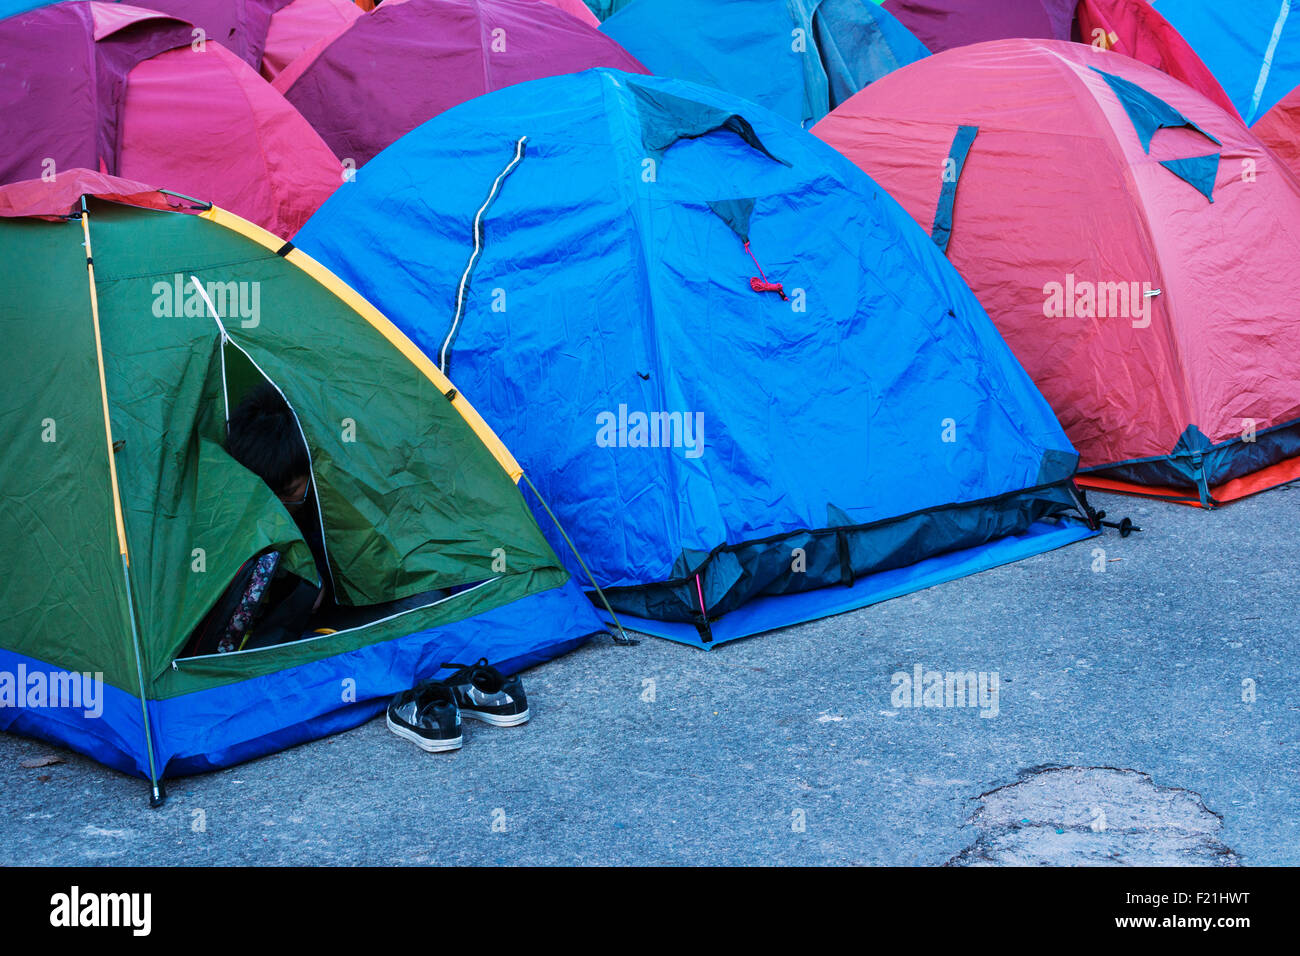 Les tentes de camping à la montagne jaune, Huang Shan, destination touristique populaire, Anhui Province, China, Asia Banque D'Images